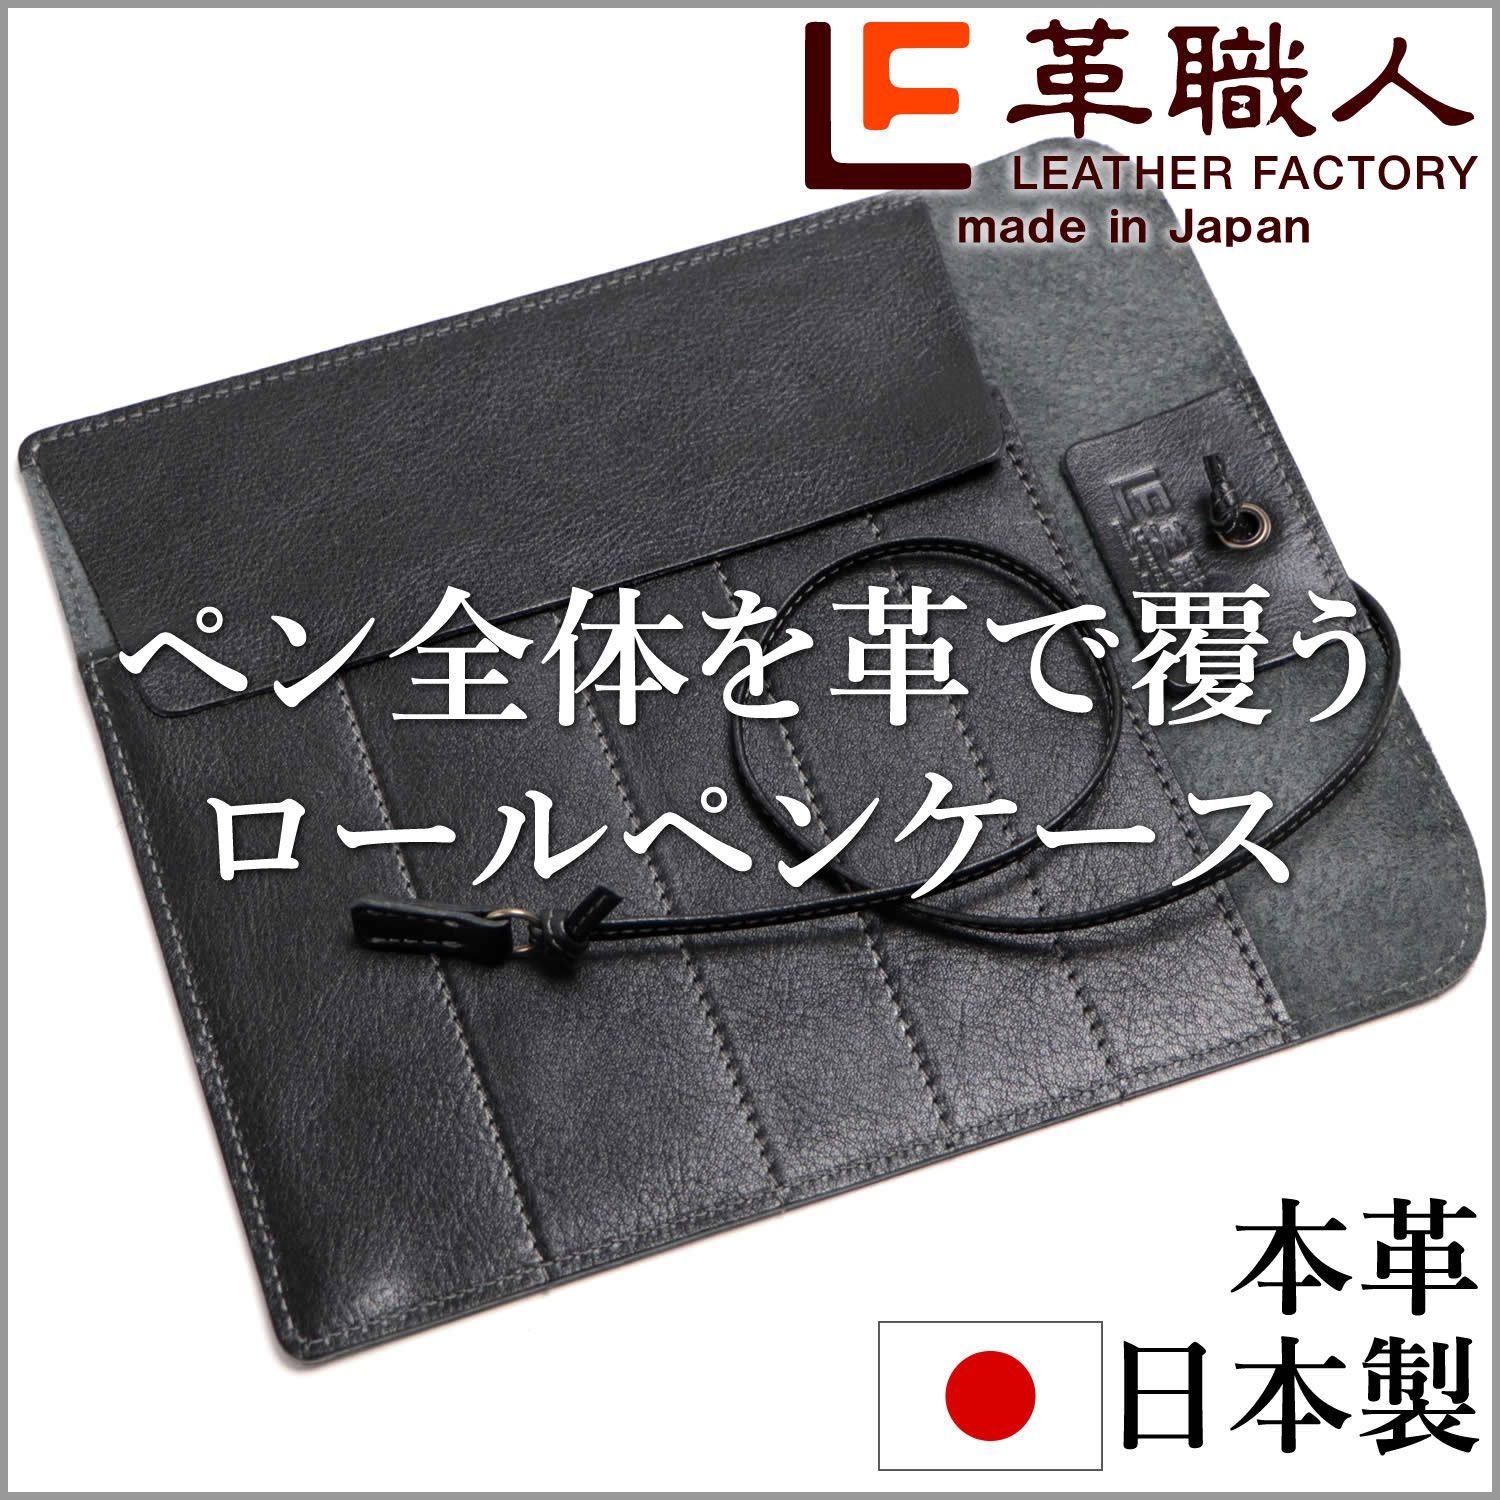 ペンケース ロール 革 5本 万年筆入れ 日本製 ネオブラック DU019BK